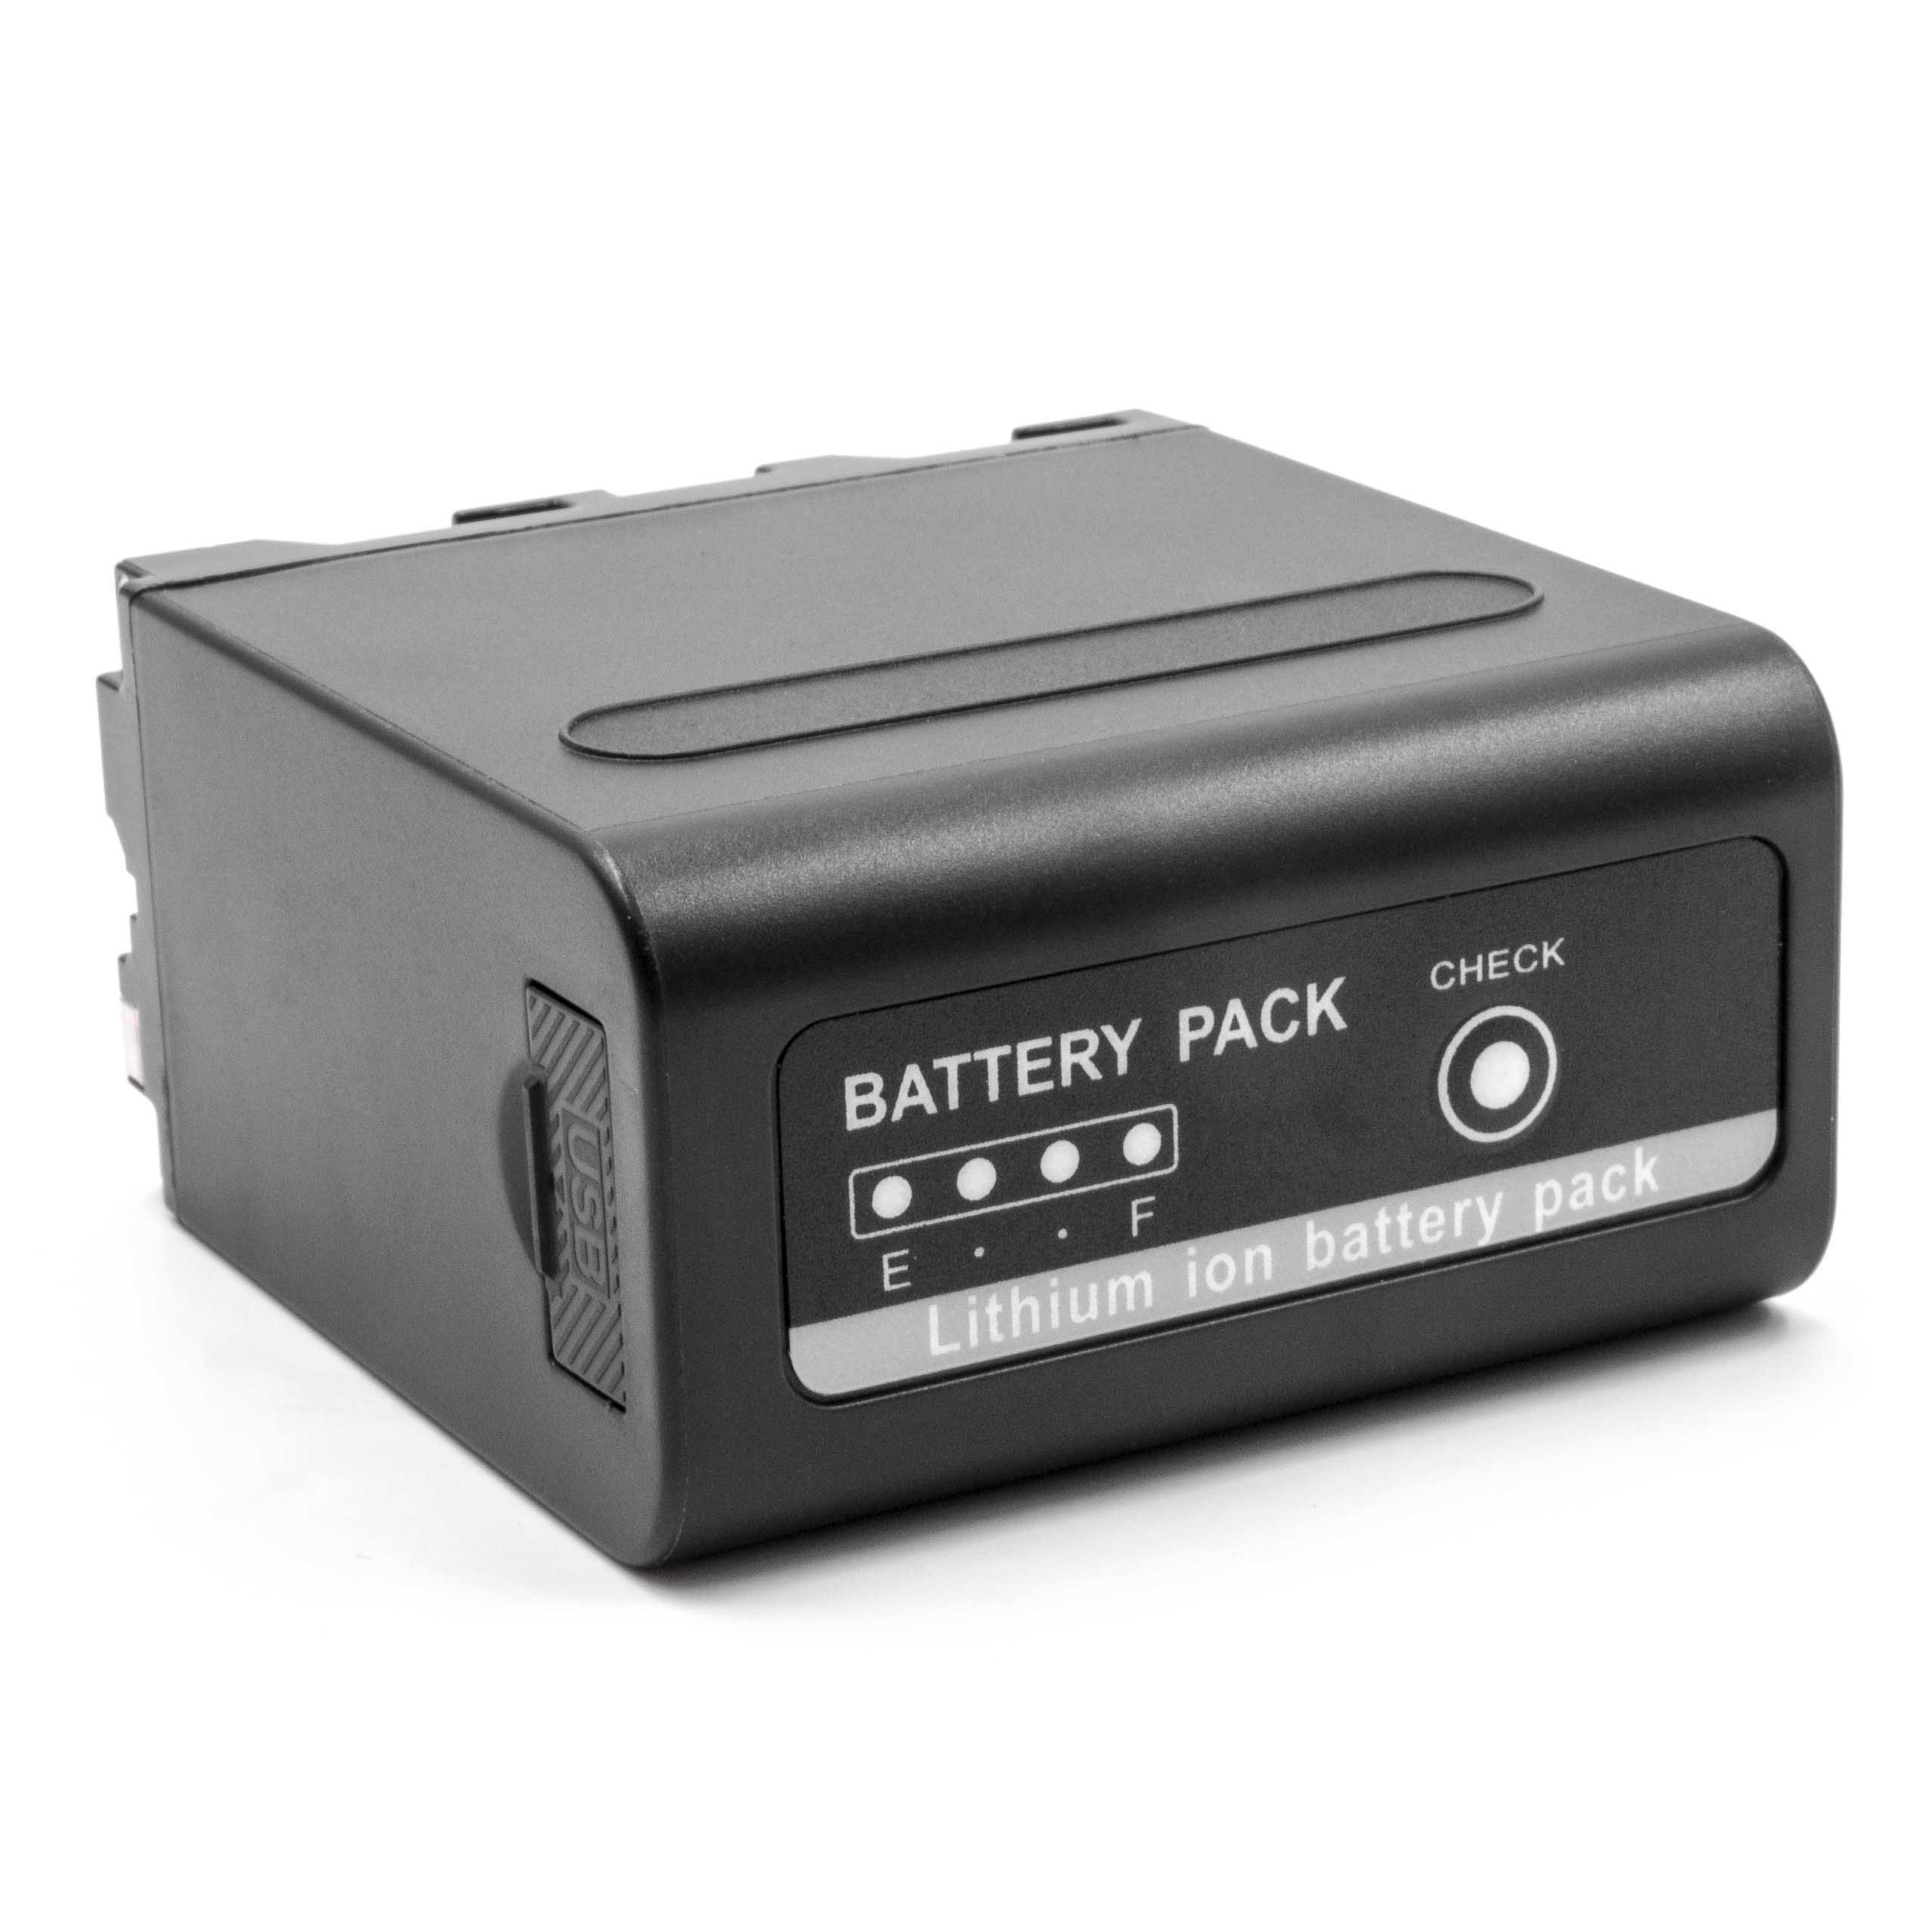 Batería reemplaza Sony NP-F930, NP-F960, NP-F950, NP-F950/B, NP-F930/B para videocámara - 10200 mAh, 7,4 V